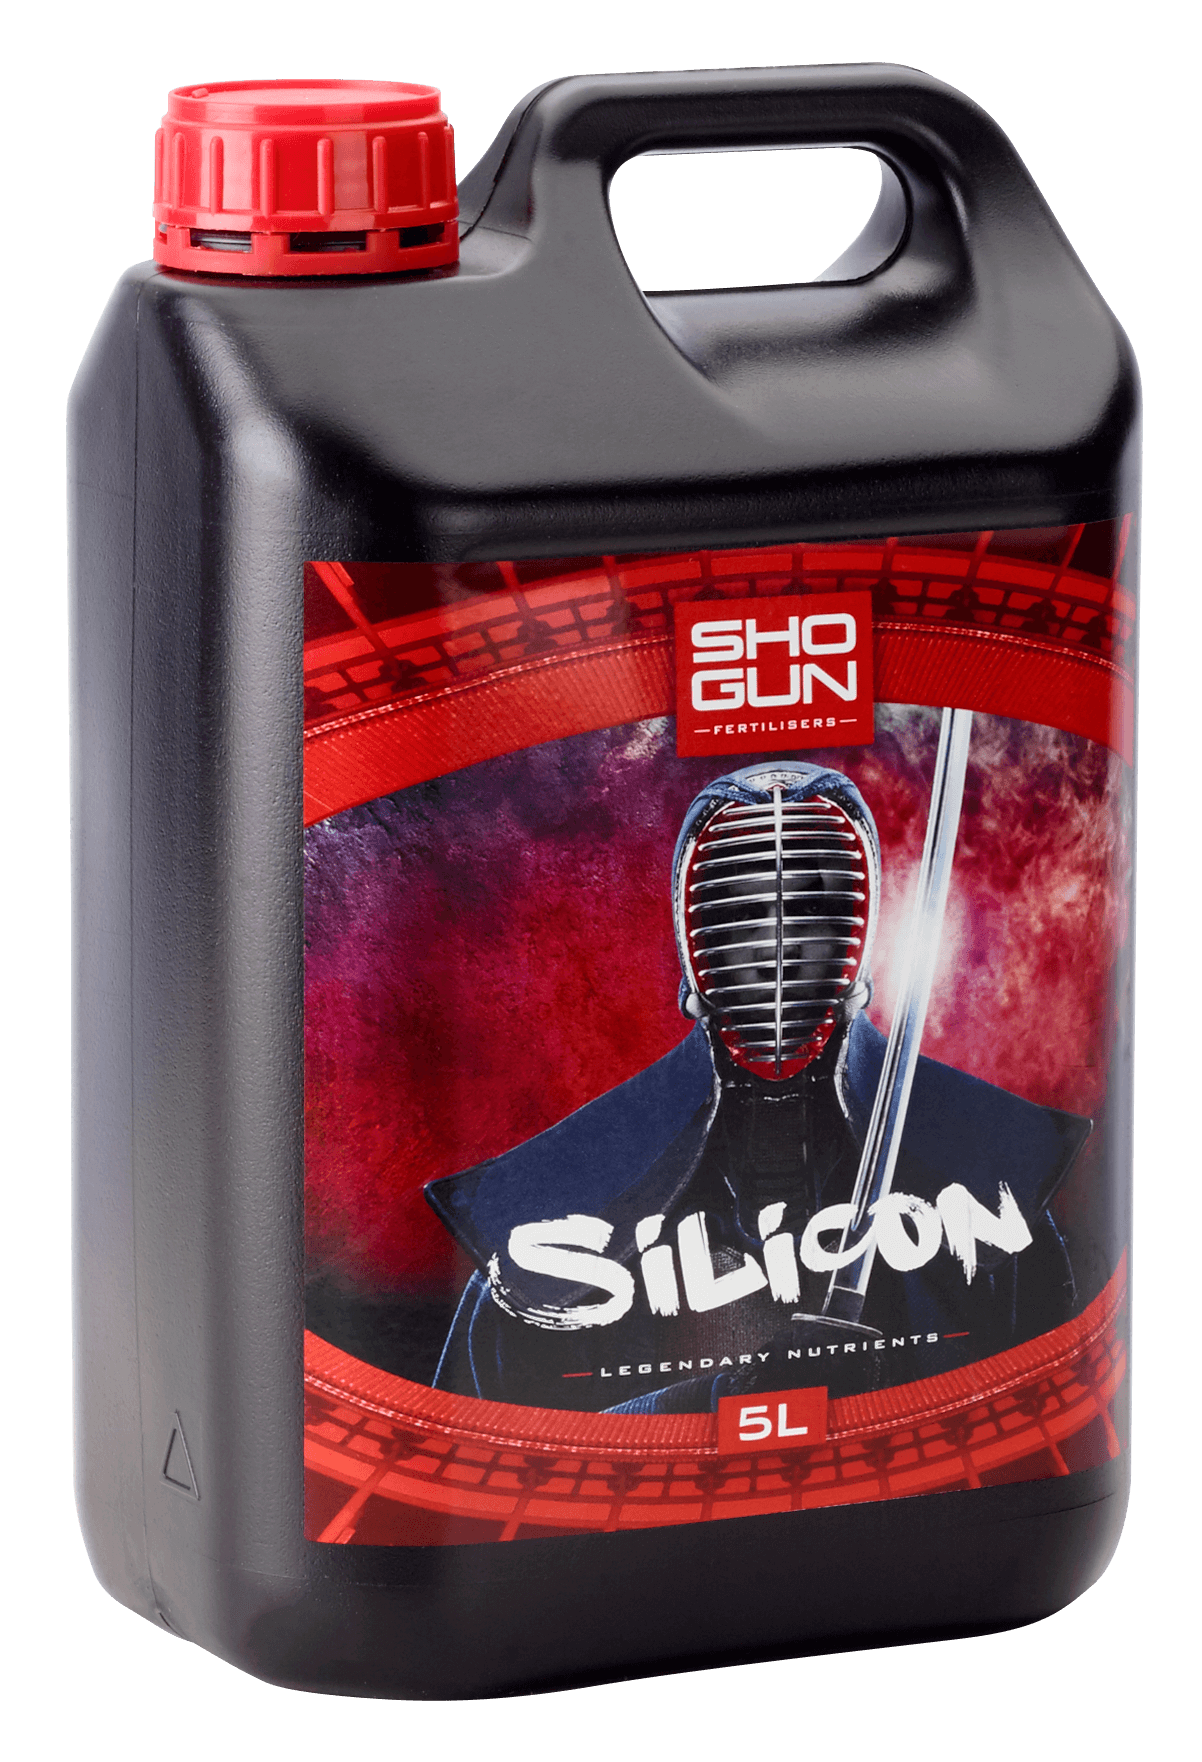 SHOGUN SILICON 5L